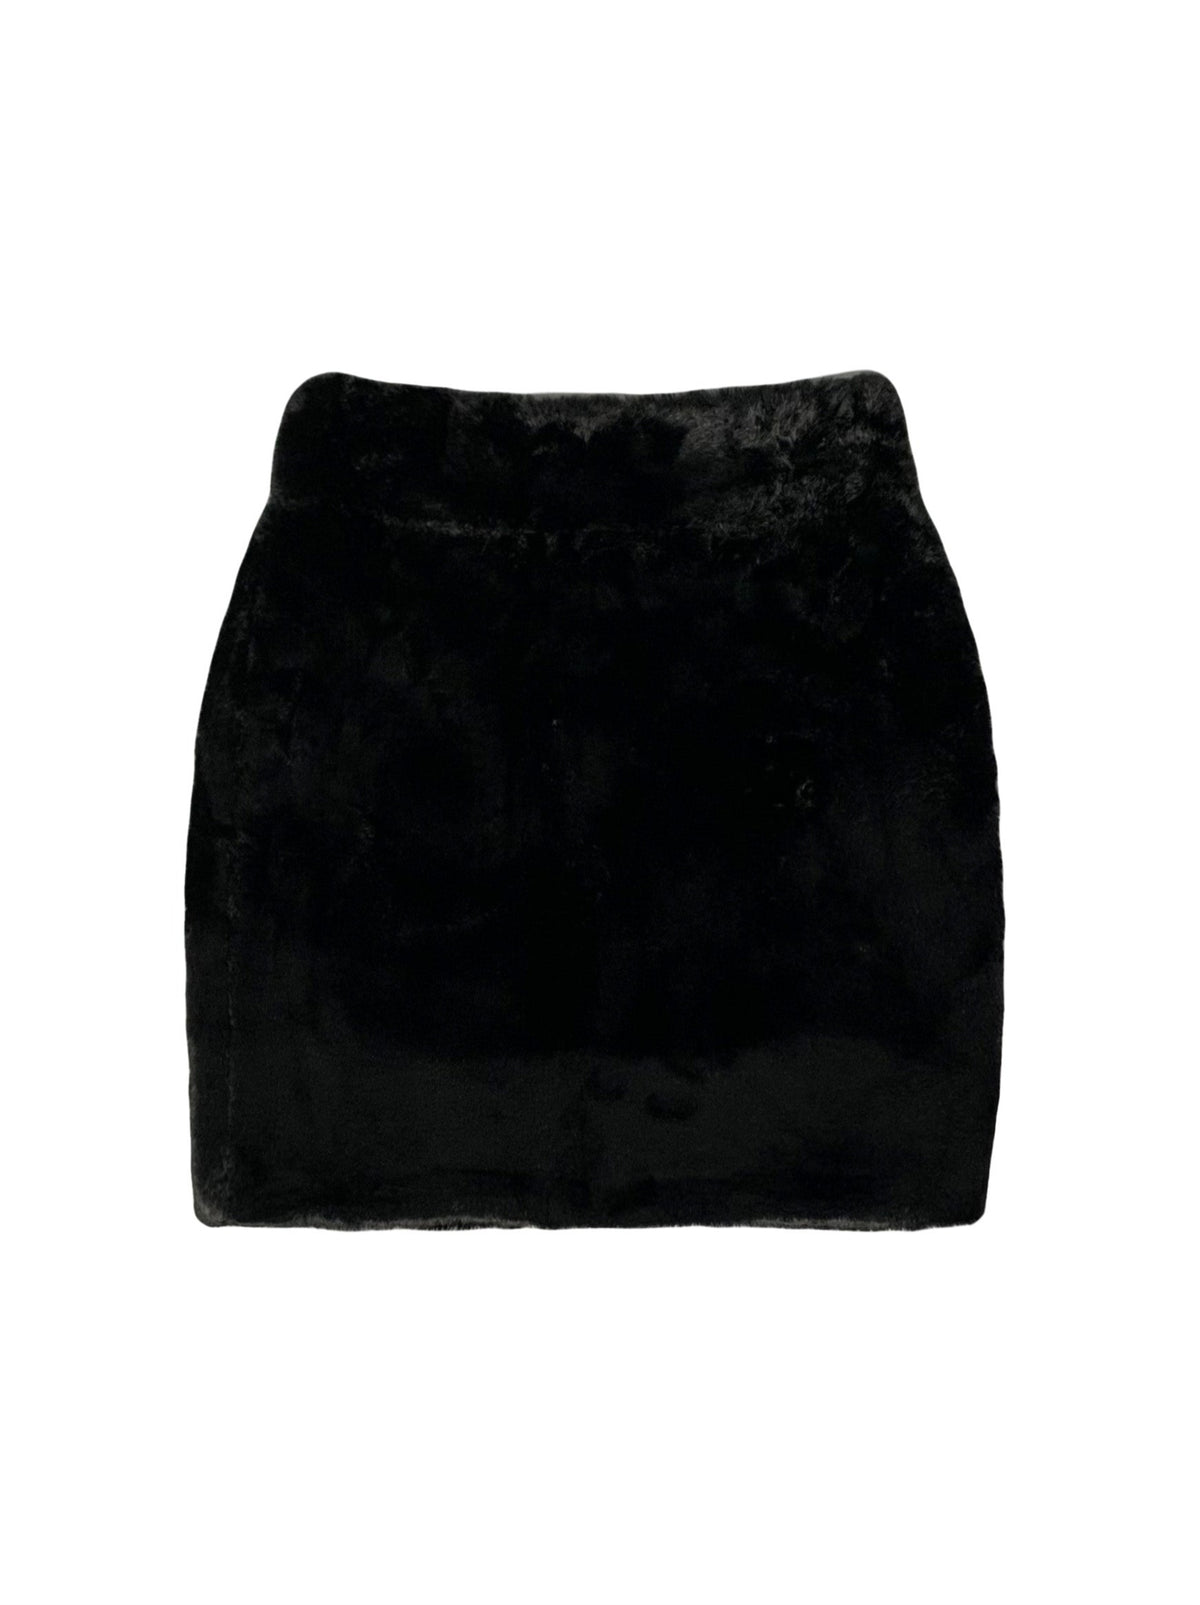 A-JANE MoMo  Faux Fur Mini Skirt